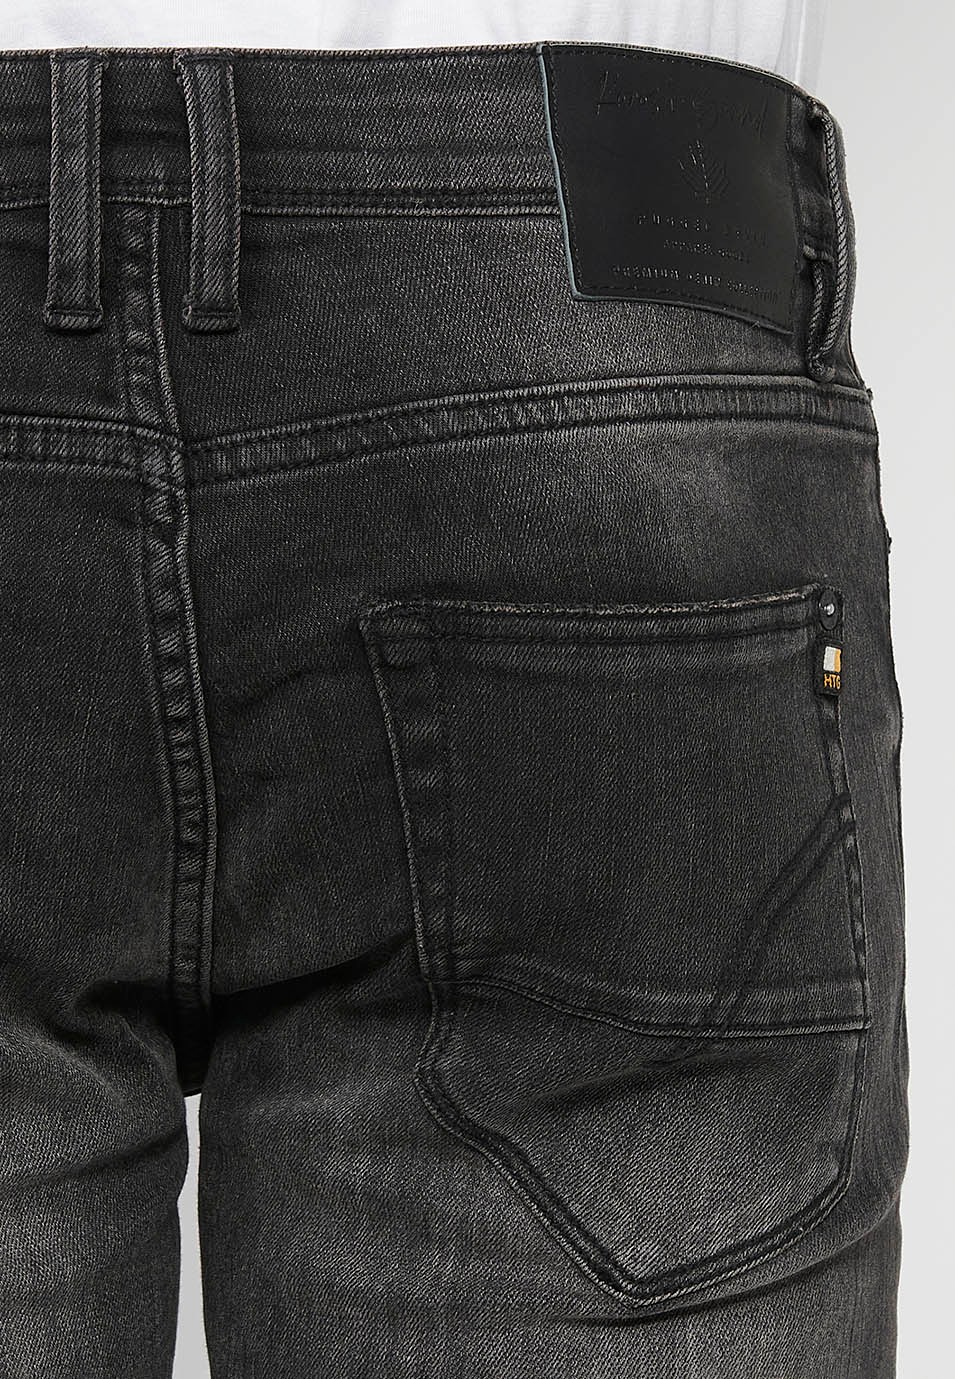 Pantalón jeans largo straigth regular fit con Cierre delantero con cremallera y botón de Color Denim Negro para Hombre 8